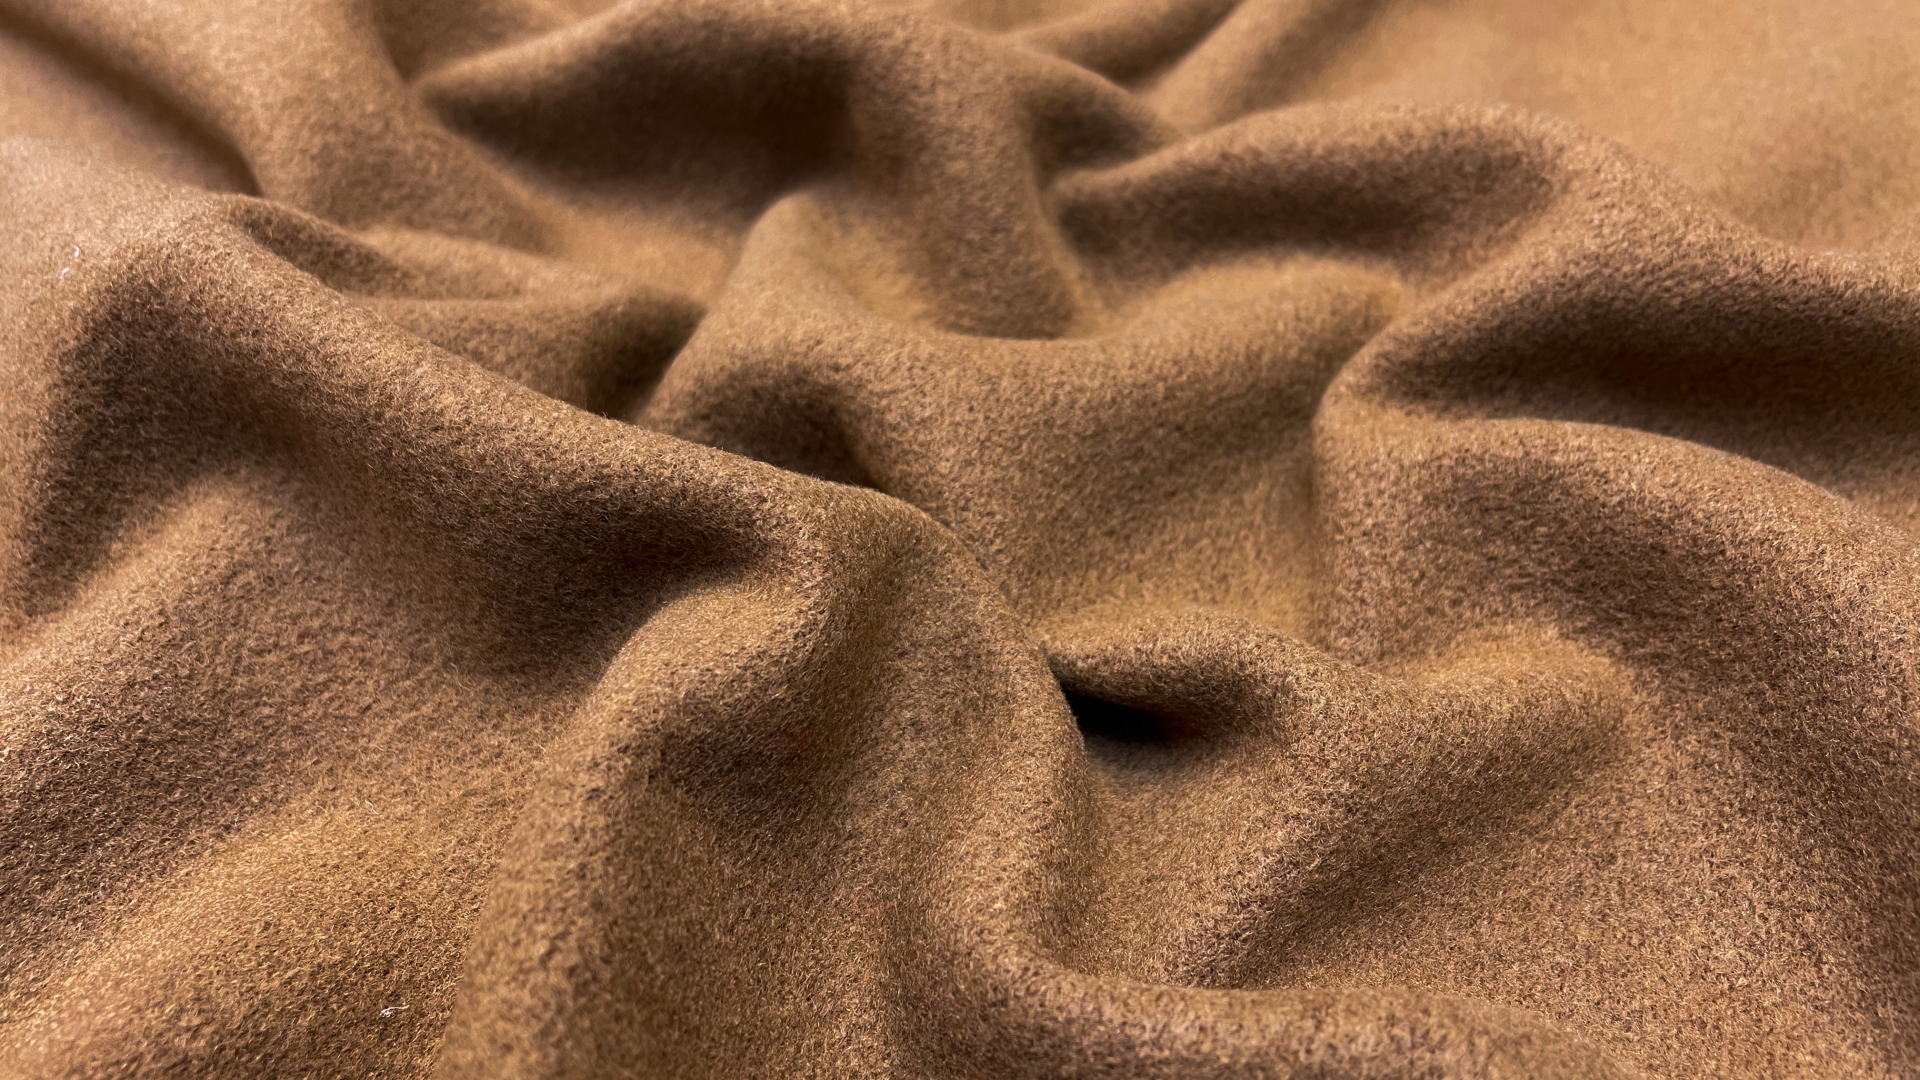 Отрез 1,2 м пальтовой ткани из итальянских стоковых коллекций. Красивый и многогранный цвет camel. Плотность 620 г/м.
Из небольшого отреза можно пошить жилет на демисезонный период, а так же можно довязать рукава из пряжи похожего цвета.